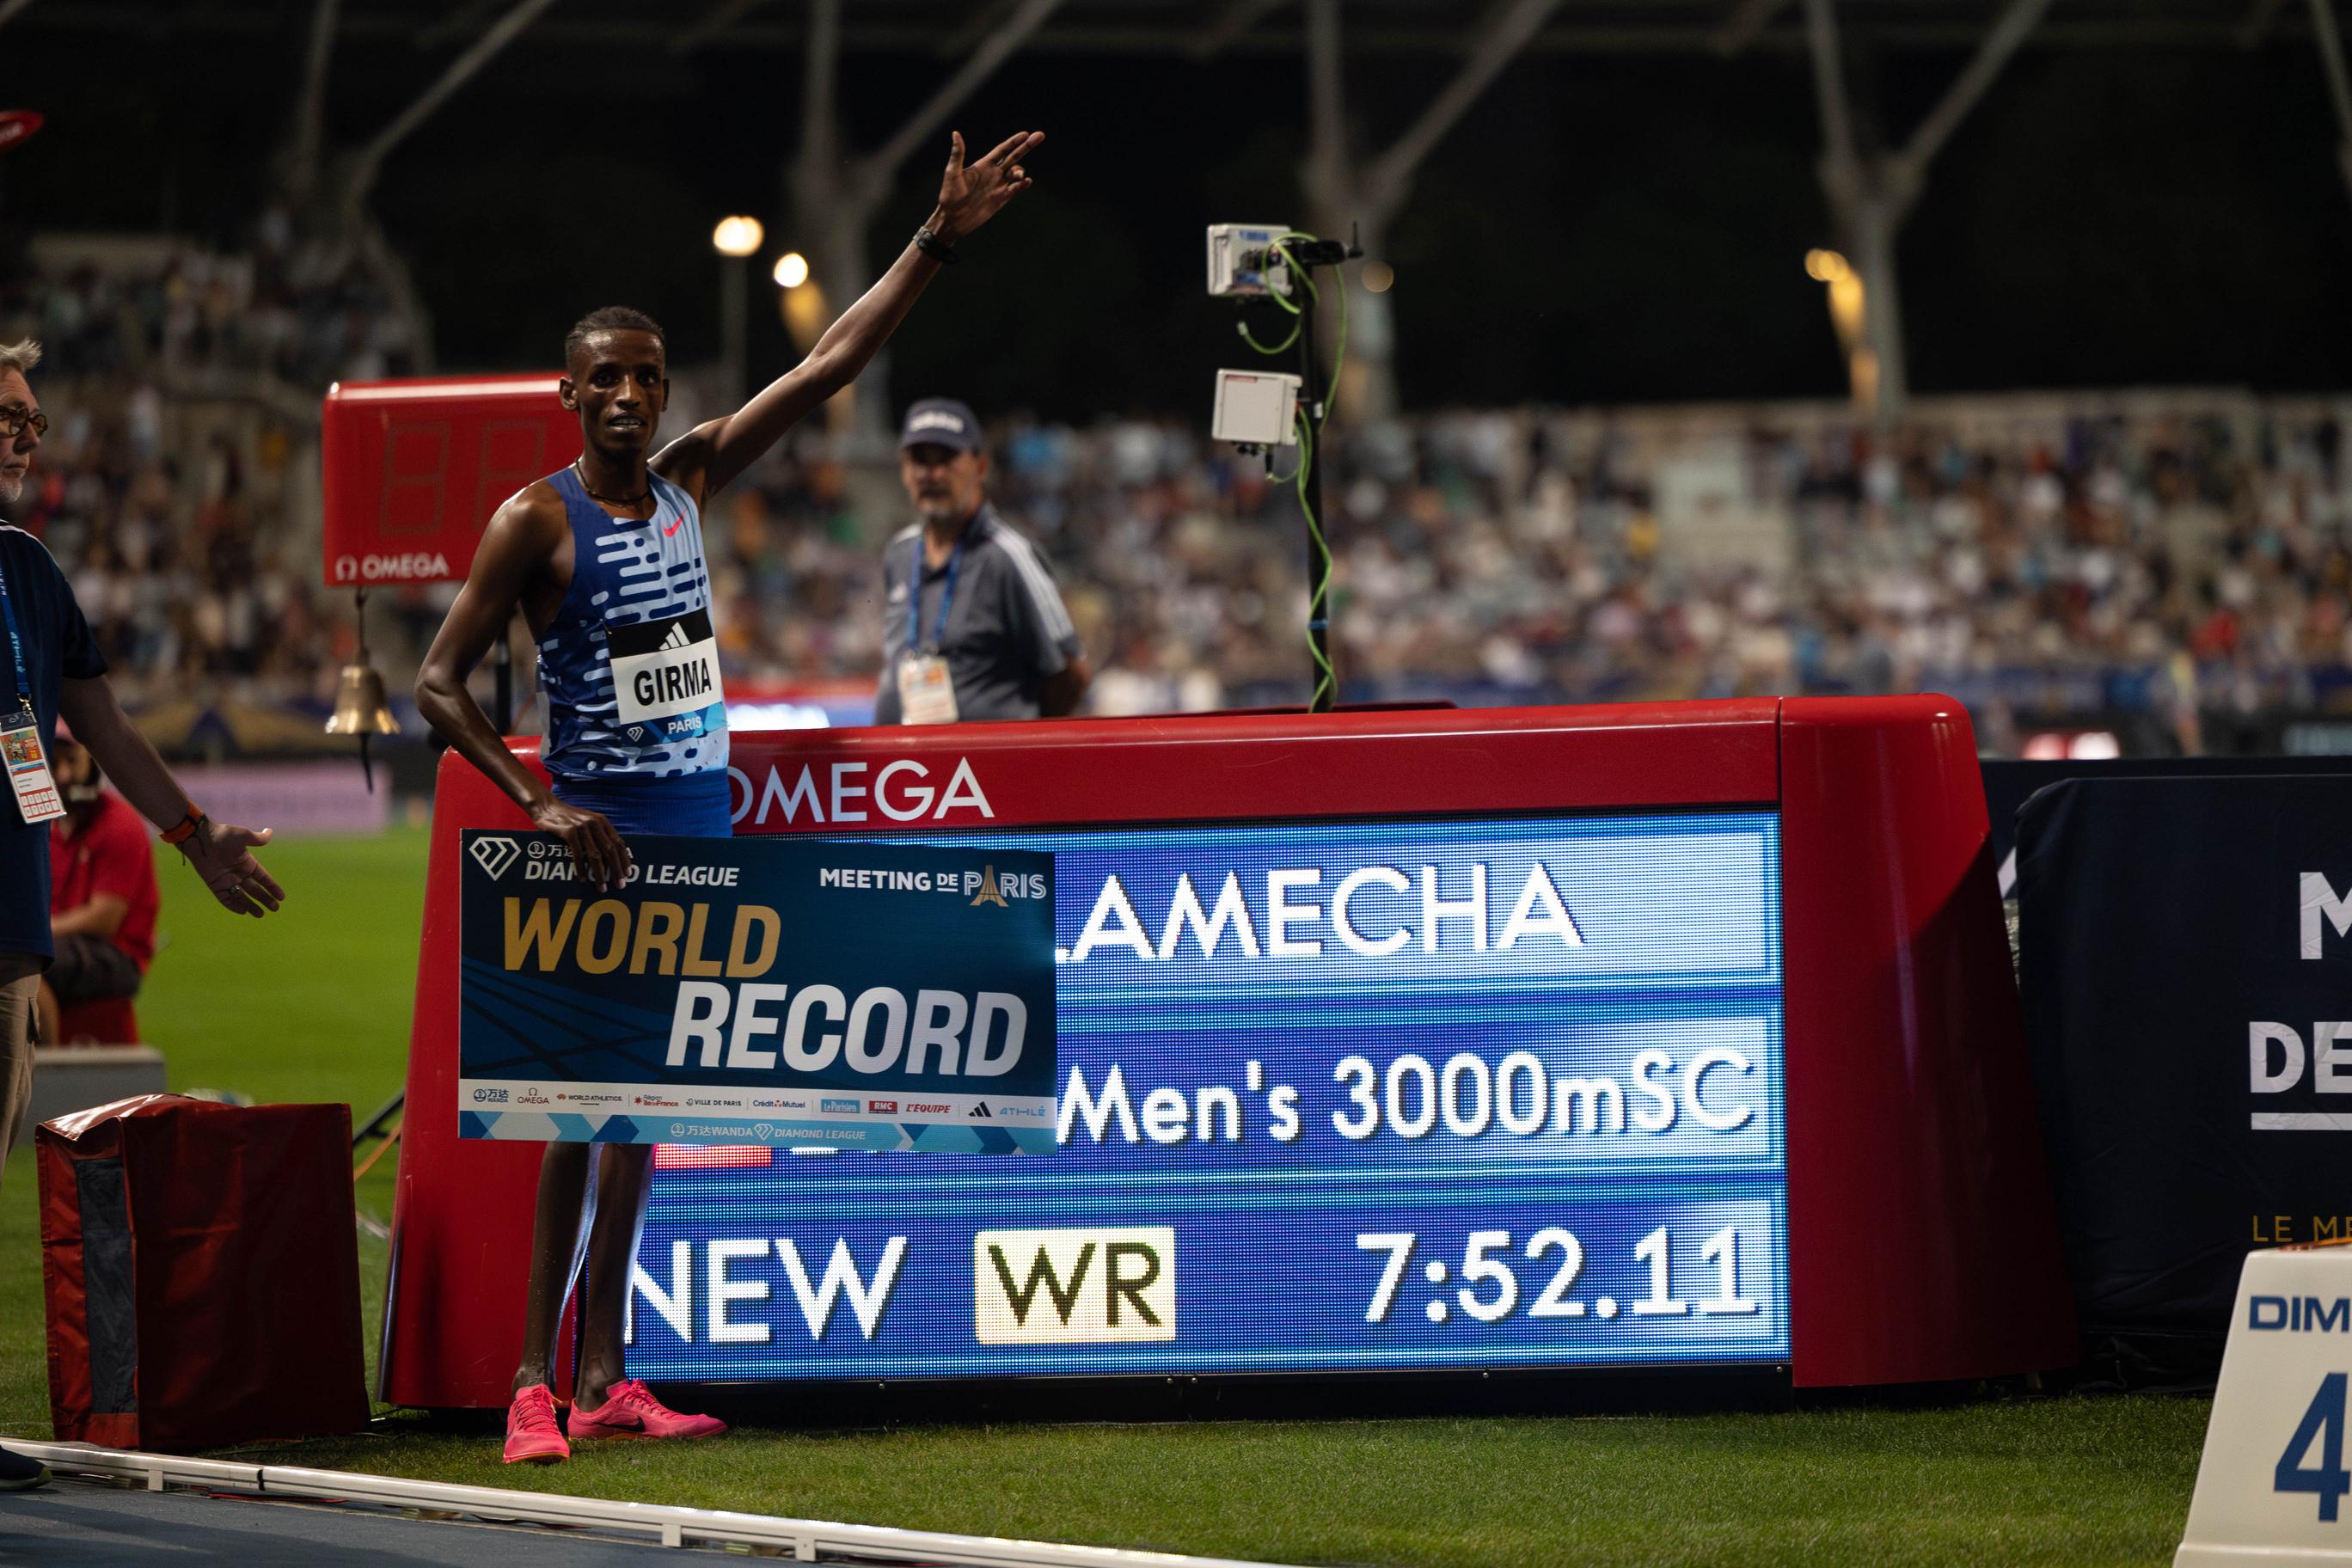 Lamecha Girma Steeplechase World Record